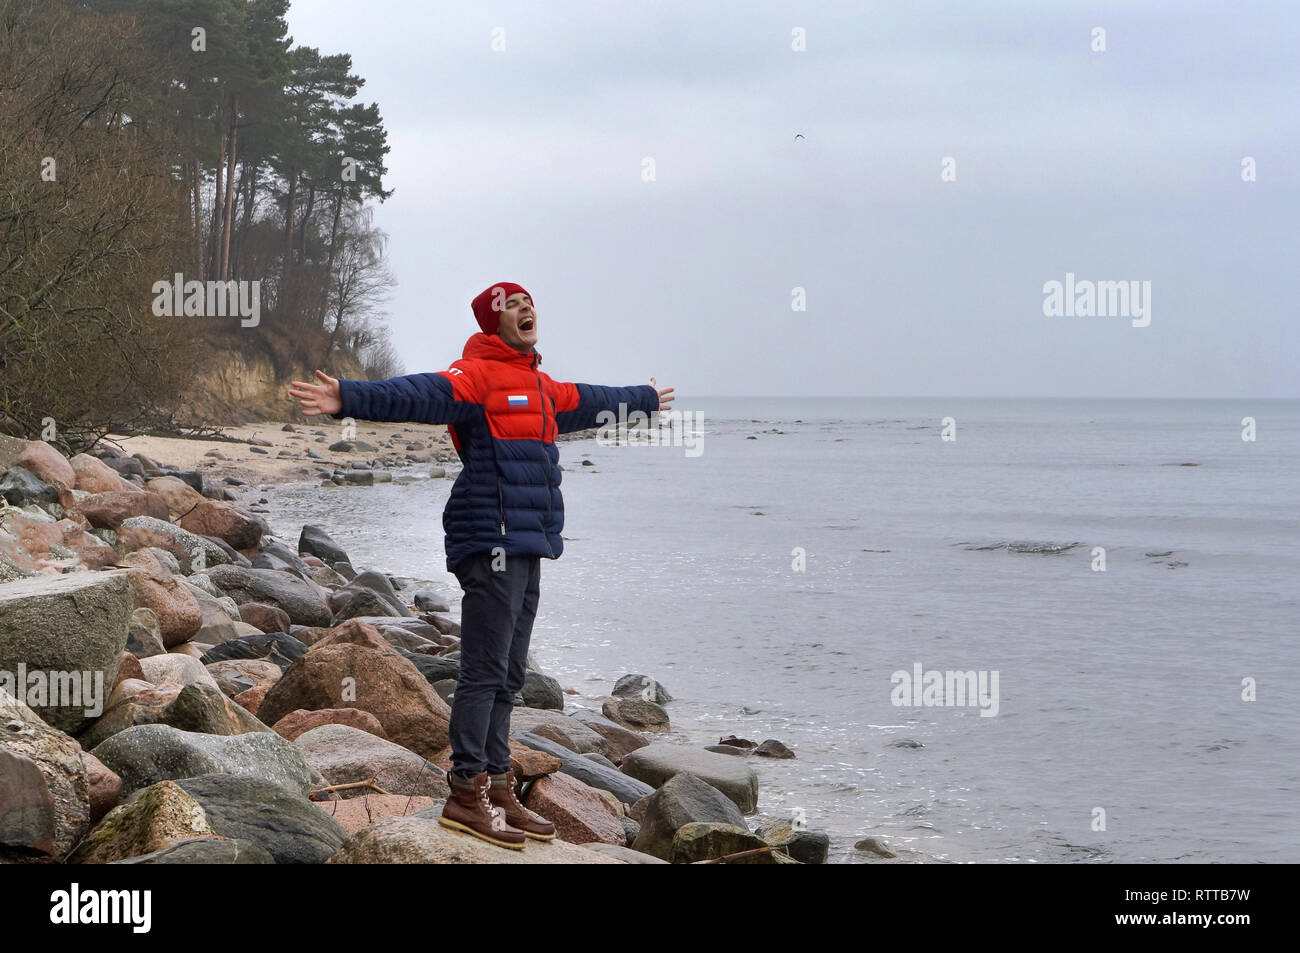 Jeune homme aime la mer, la pluie et le ciel couvert à mer, côte de la mer Baltique, la région de Kaliningrad, Russie, Décembre 30, 2018 Banque D'Images